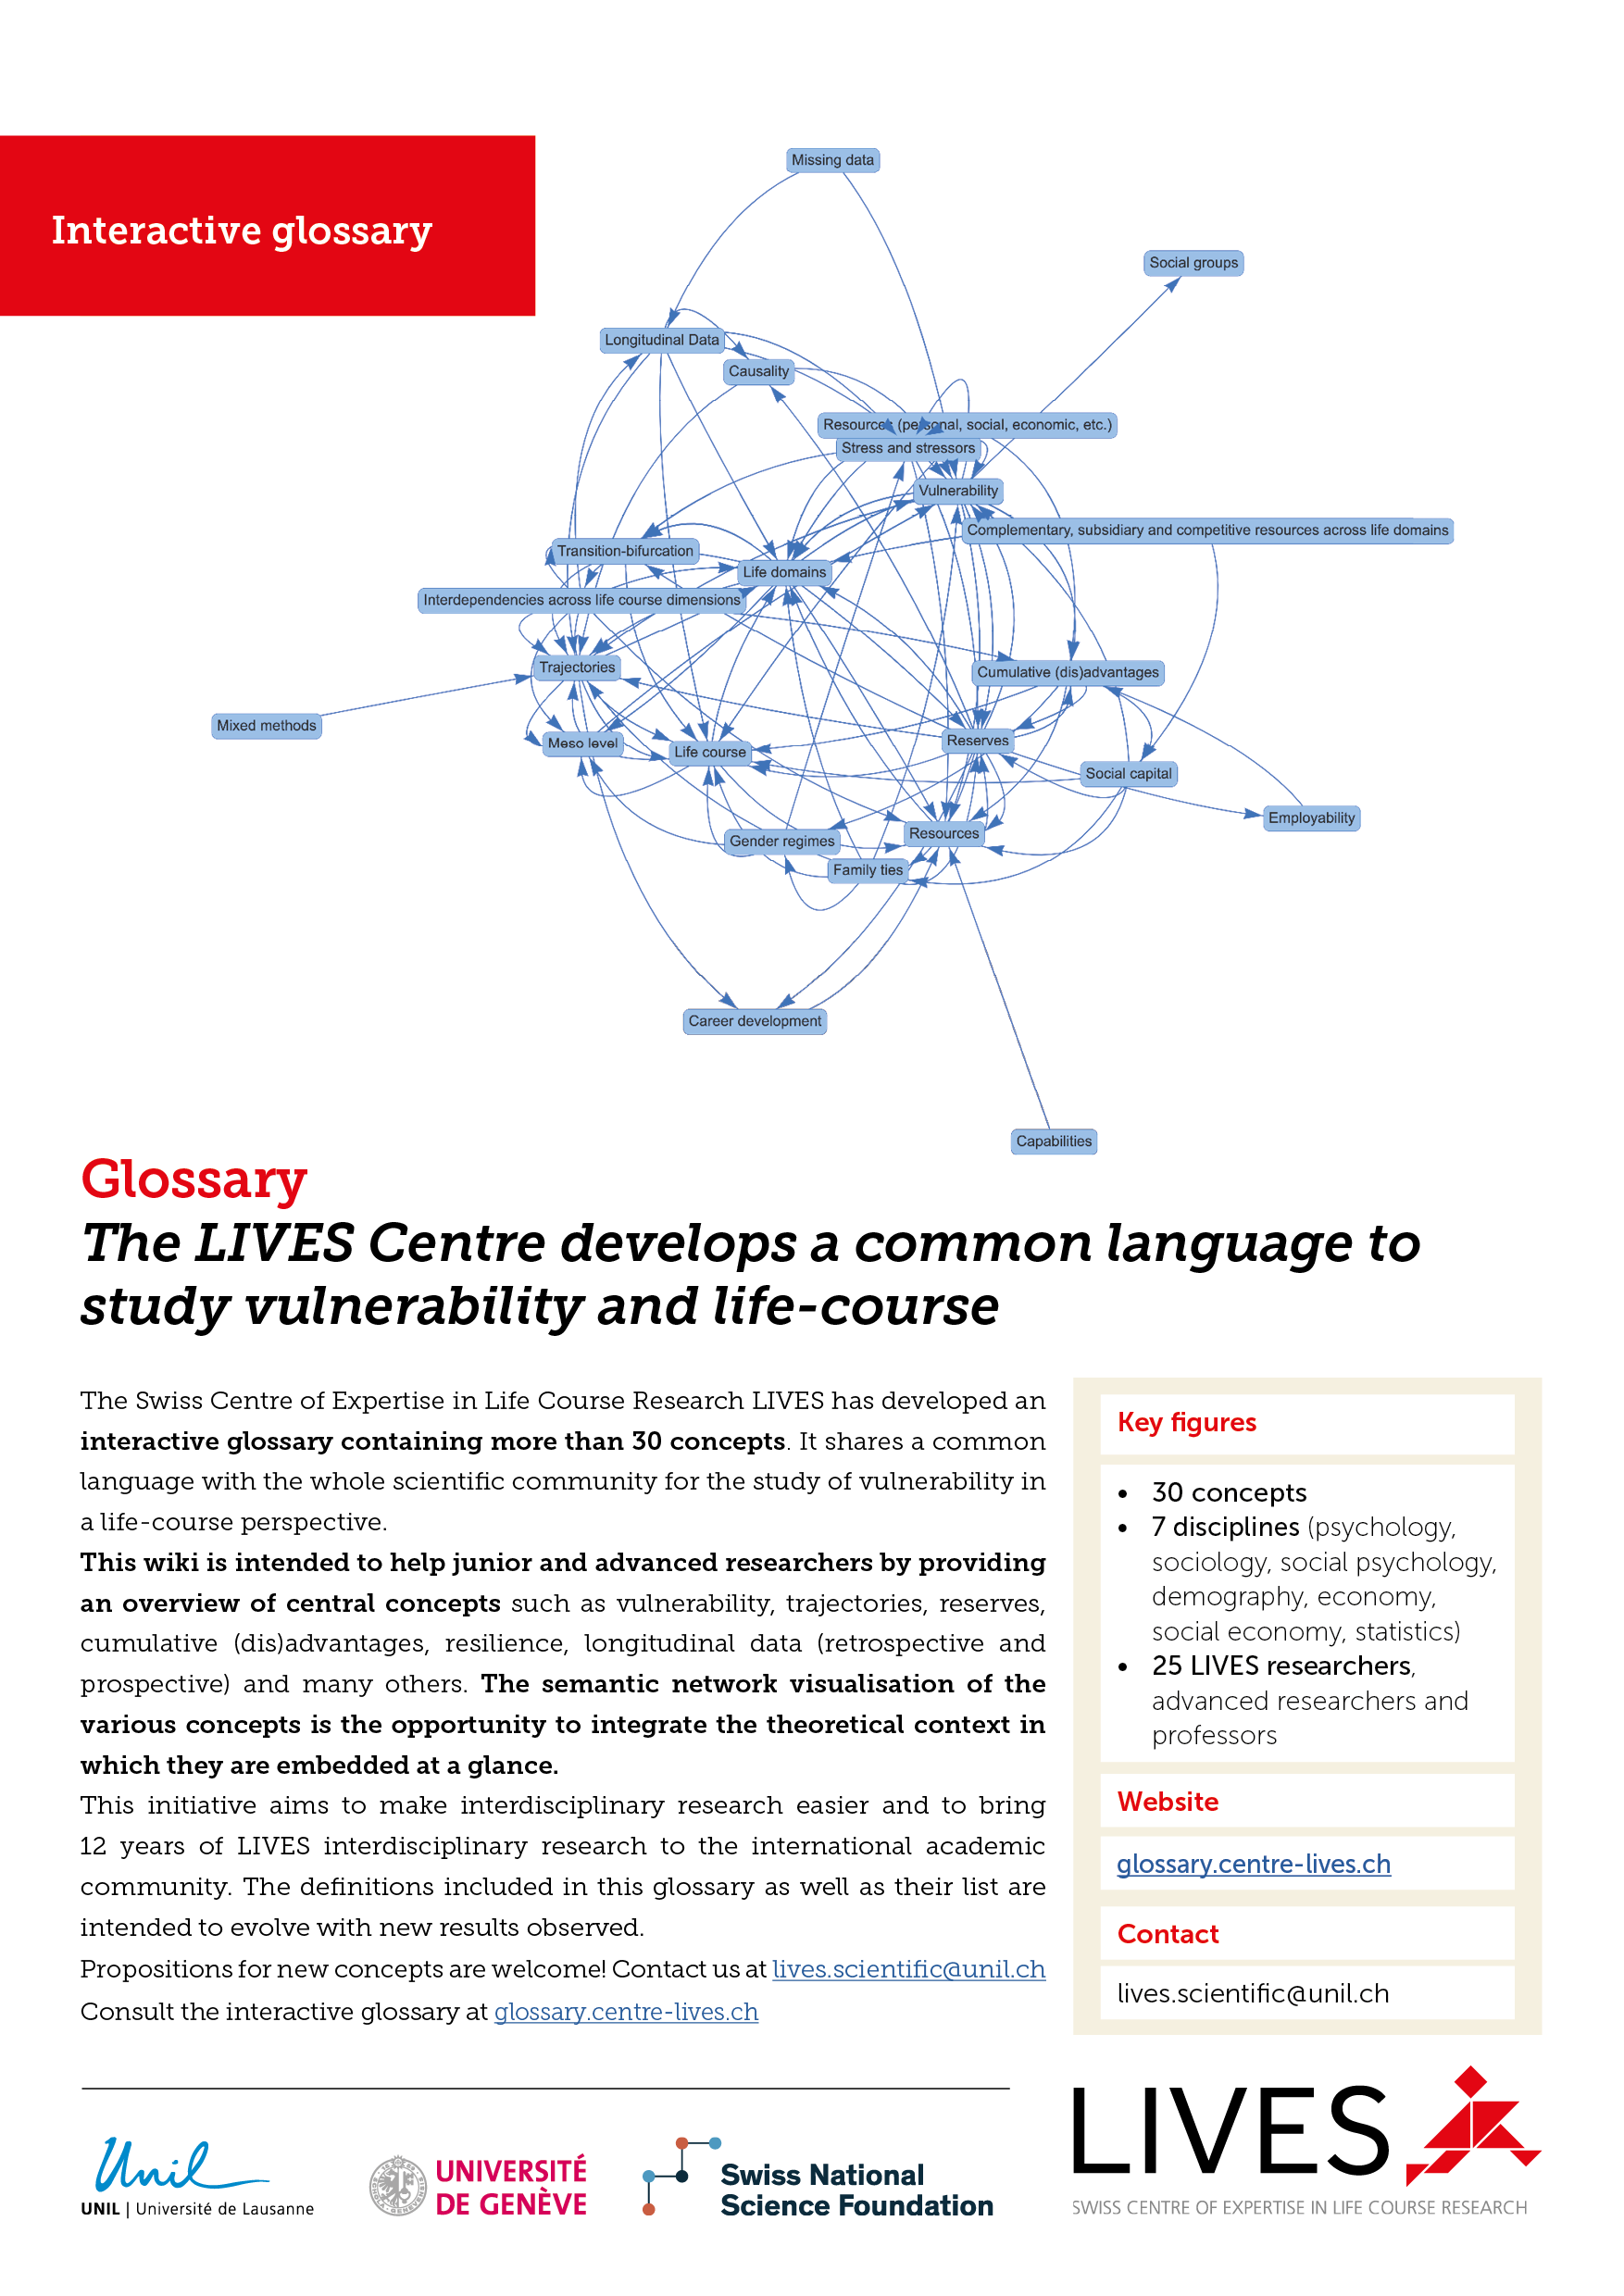 Affiche de présentation du glossaire interactif du Centre LIVES (version imprimable)